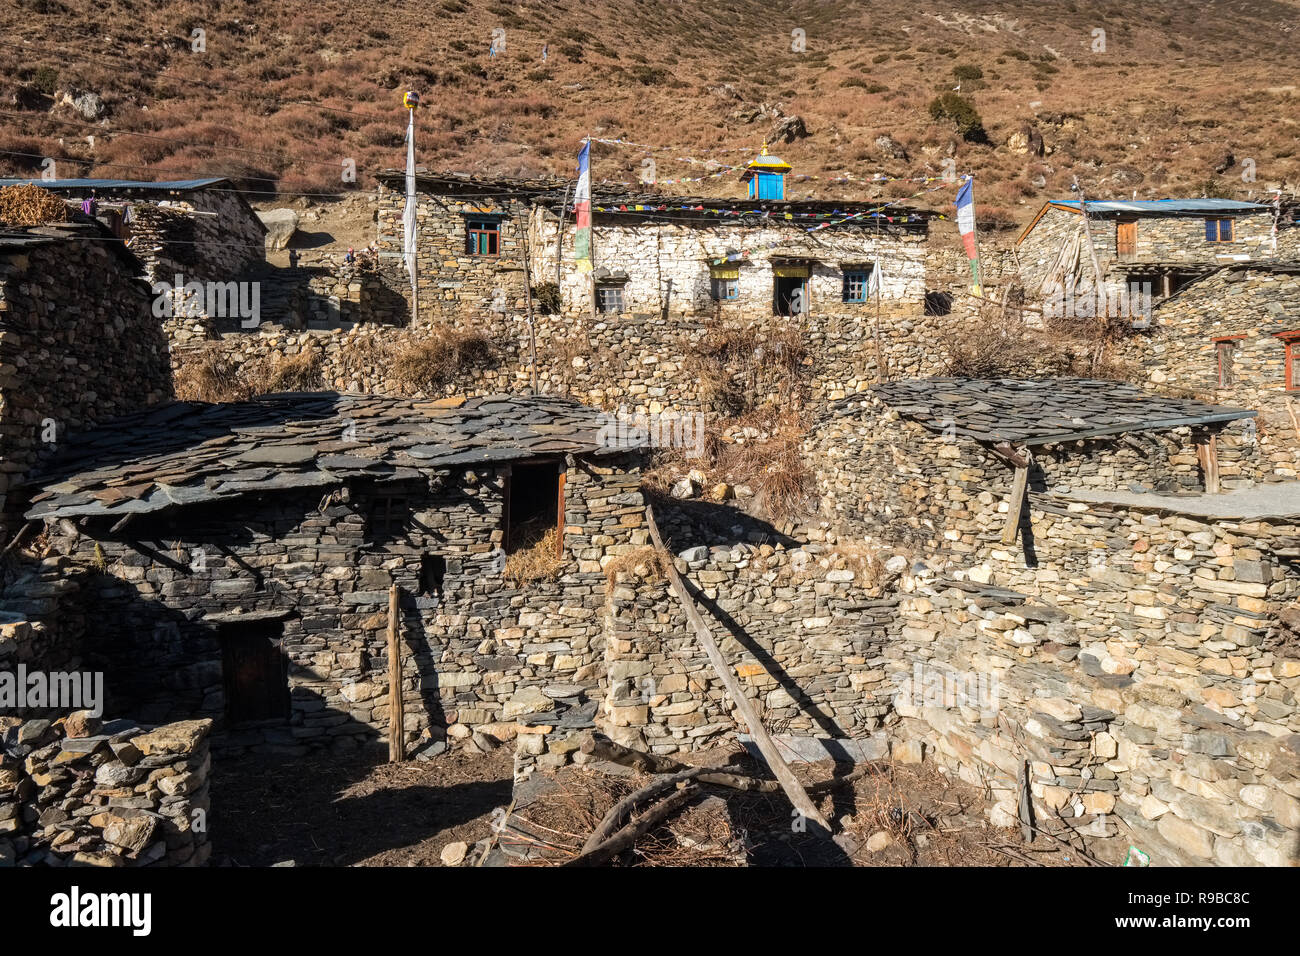 Le village tibétain de Samdo sur le Manaslu trek Circuit est composé de 2 maisons traditionnelles histoire avec le bétail ci-dessous logement Banque D'Images